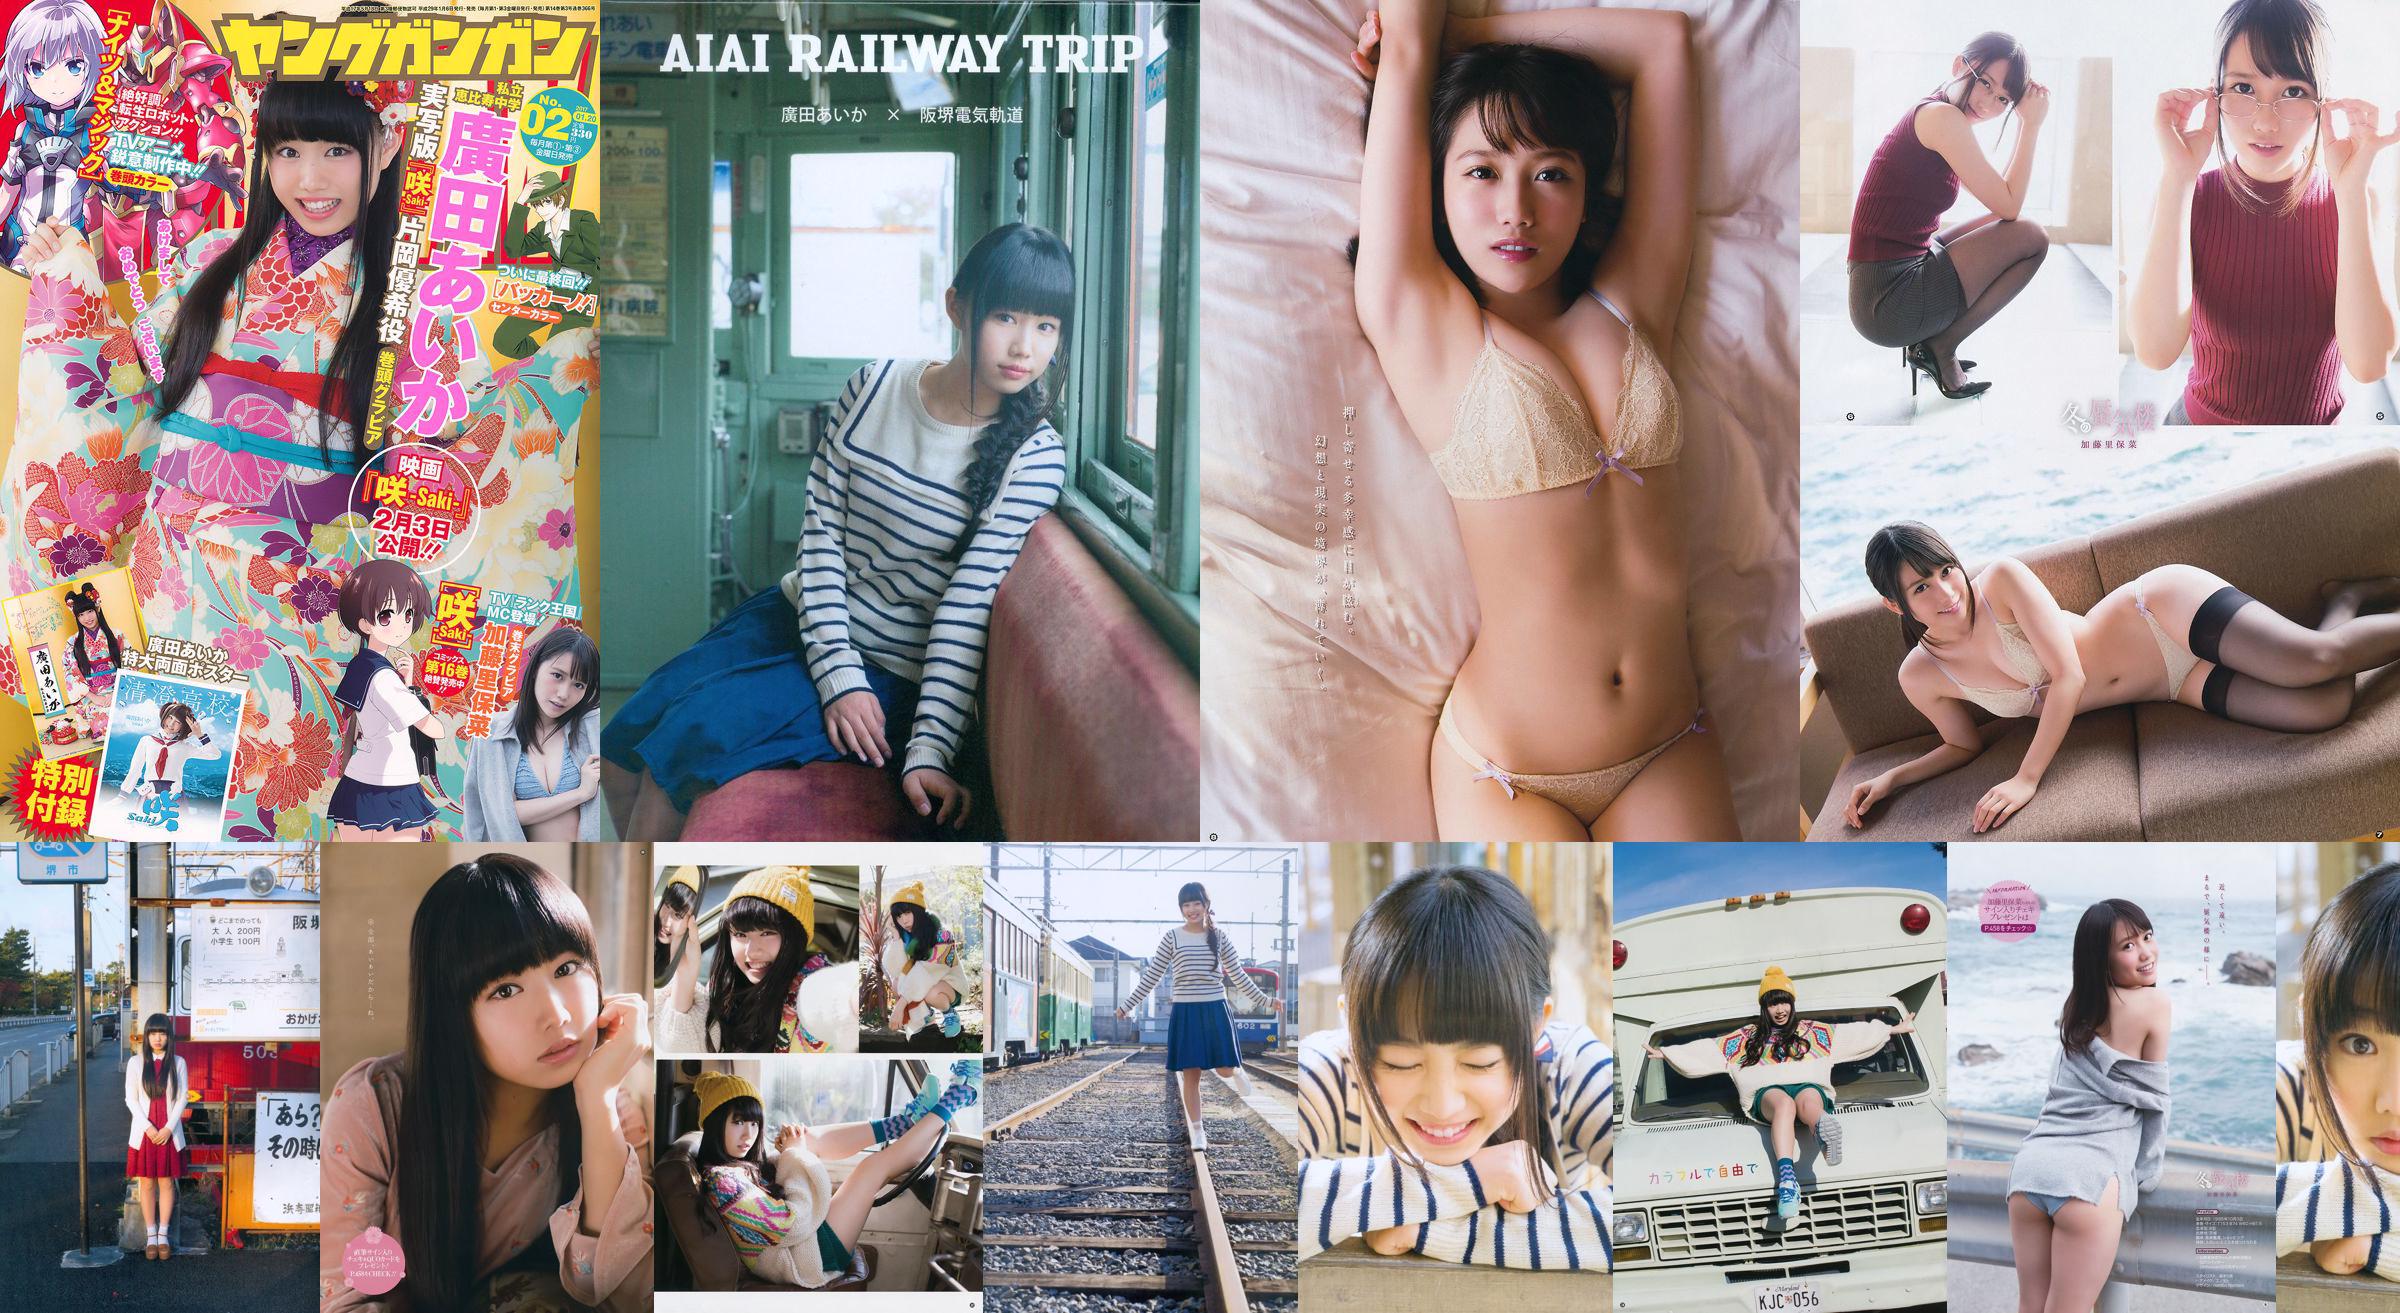 Hirota Aihua / Hirota Aika "AIAI EISENBAHNREISE" Foto DVD Buch [PB] No.74b53f Seite 1